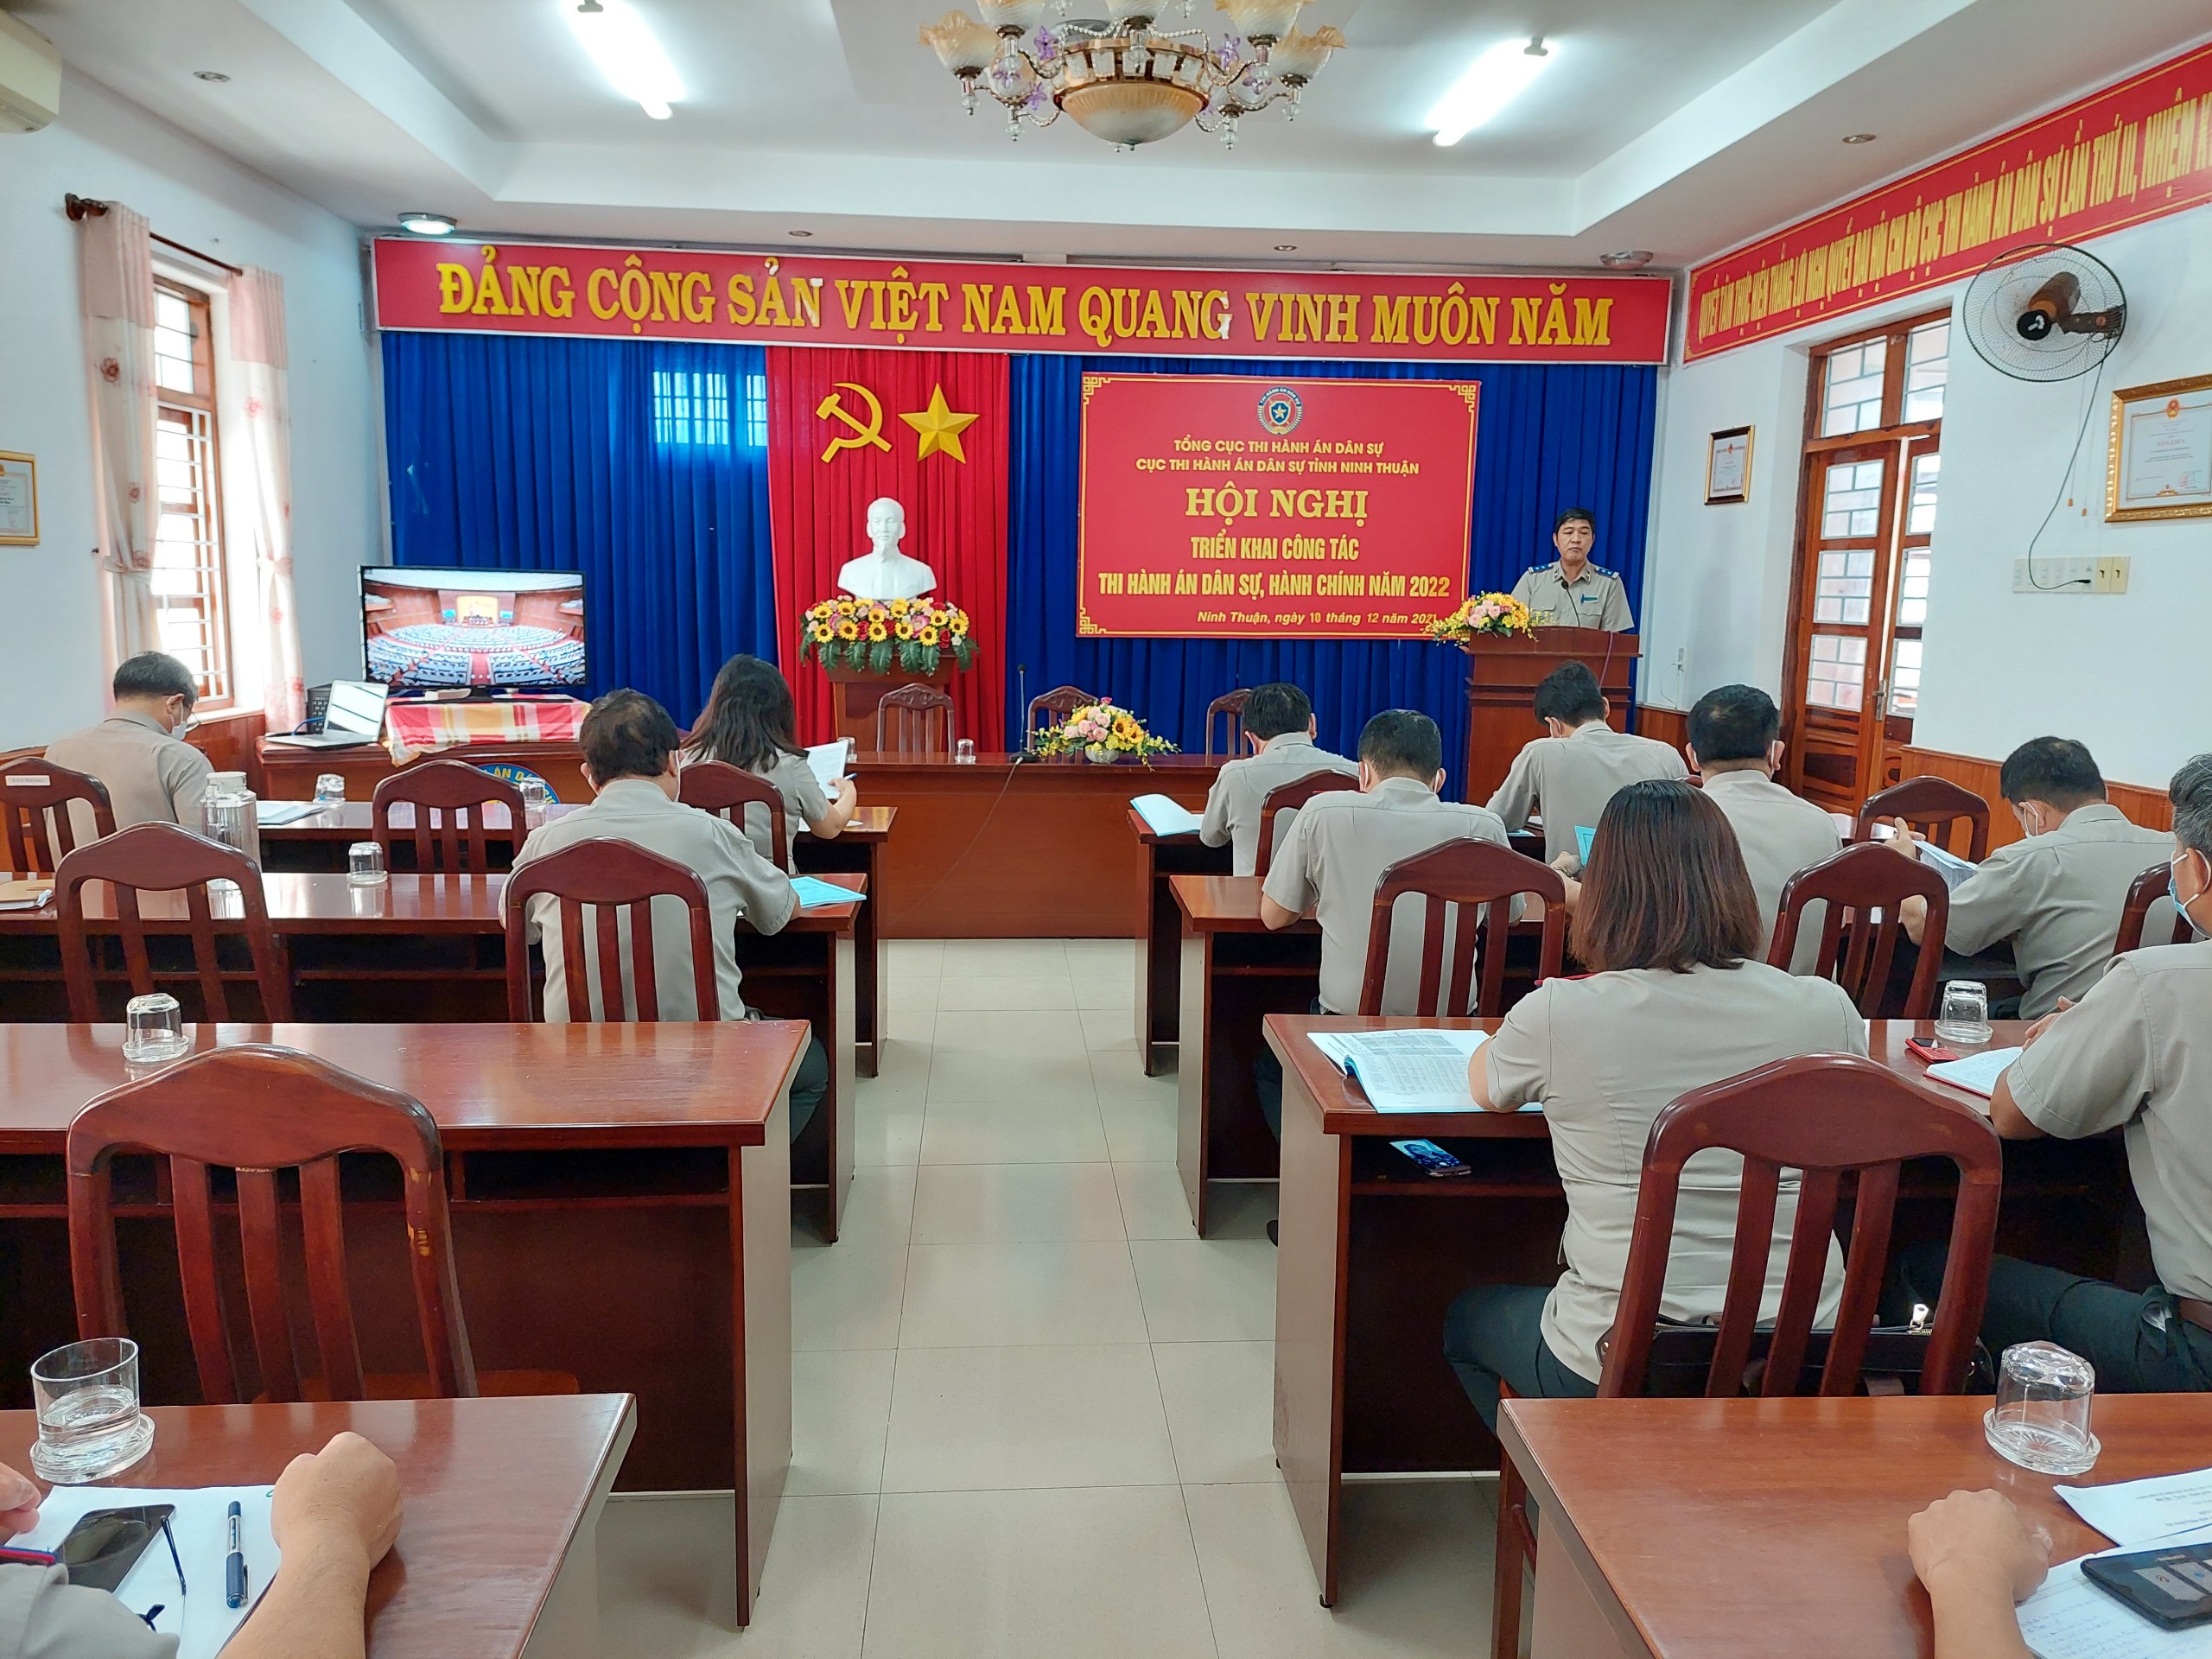 Cục Thi hành án dân sự tỉnh Ninh Thuận tổ chức Hội nghị triển khai công tác thi hành án dân sự, theo dõi thi hành án hành chính năm 2022.